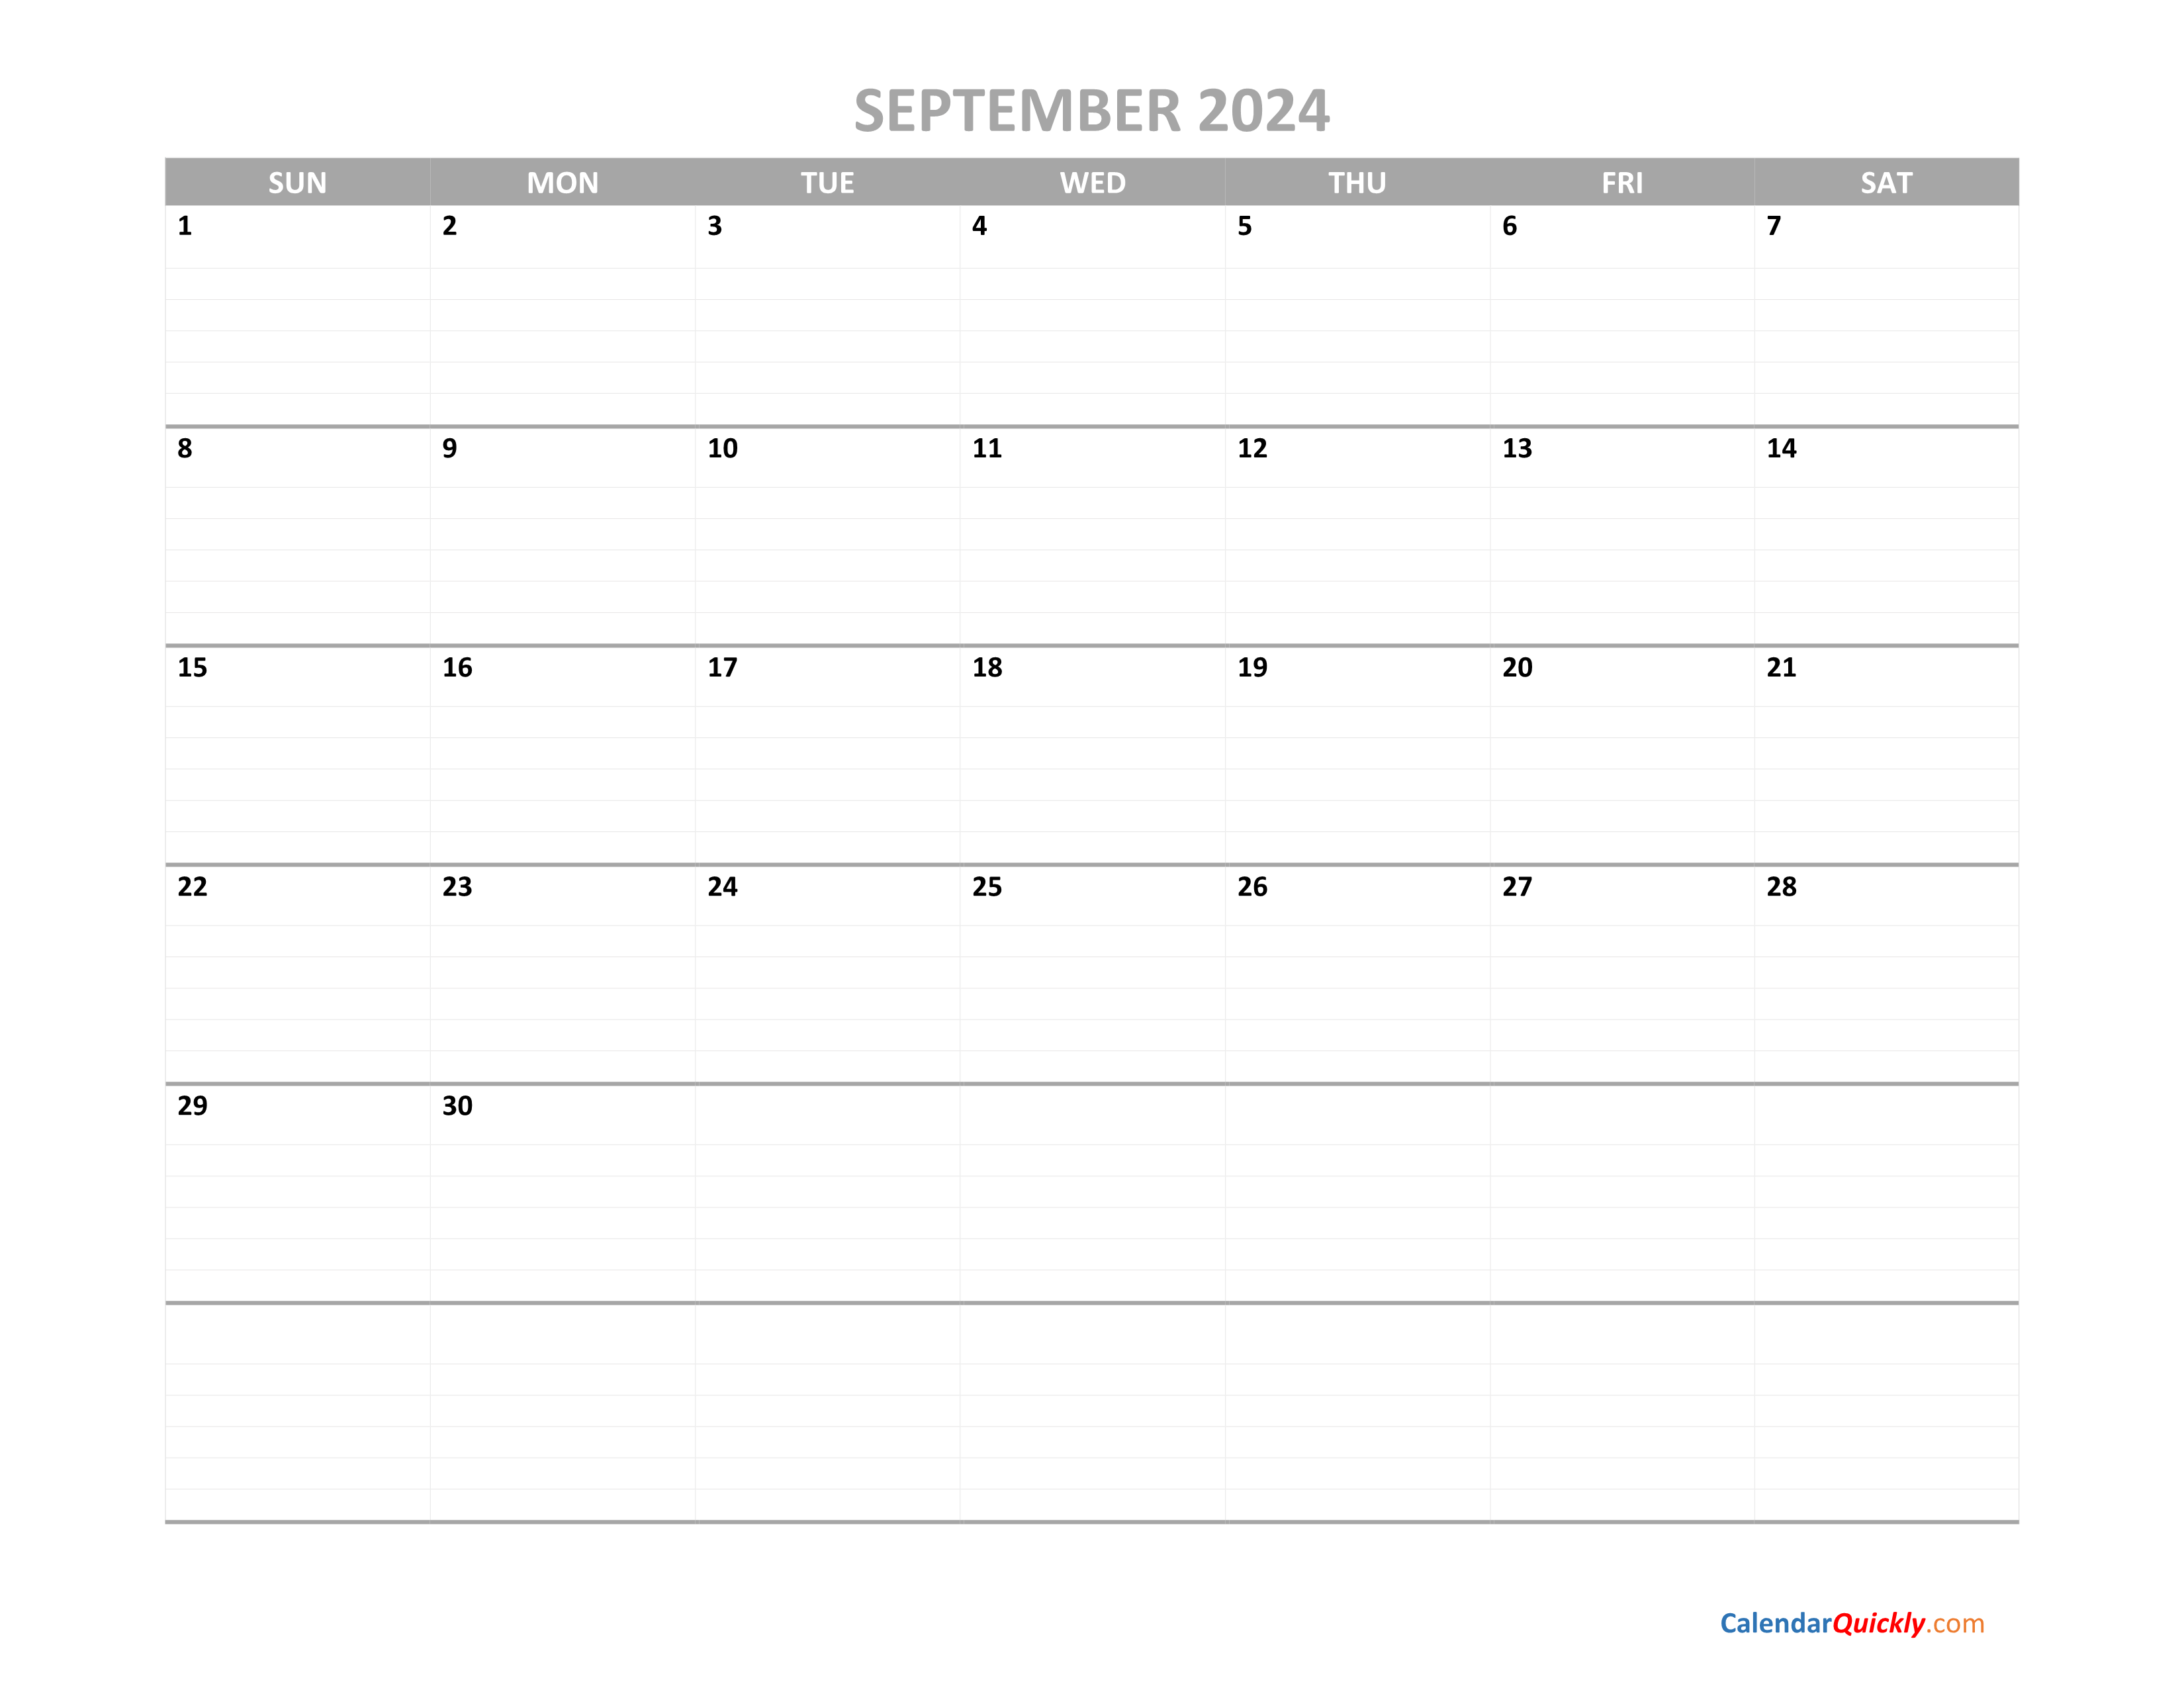 september-calendar-2024-printable-calendar-quickly